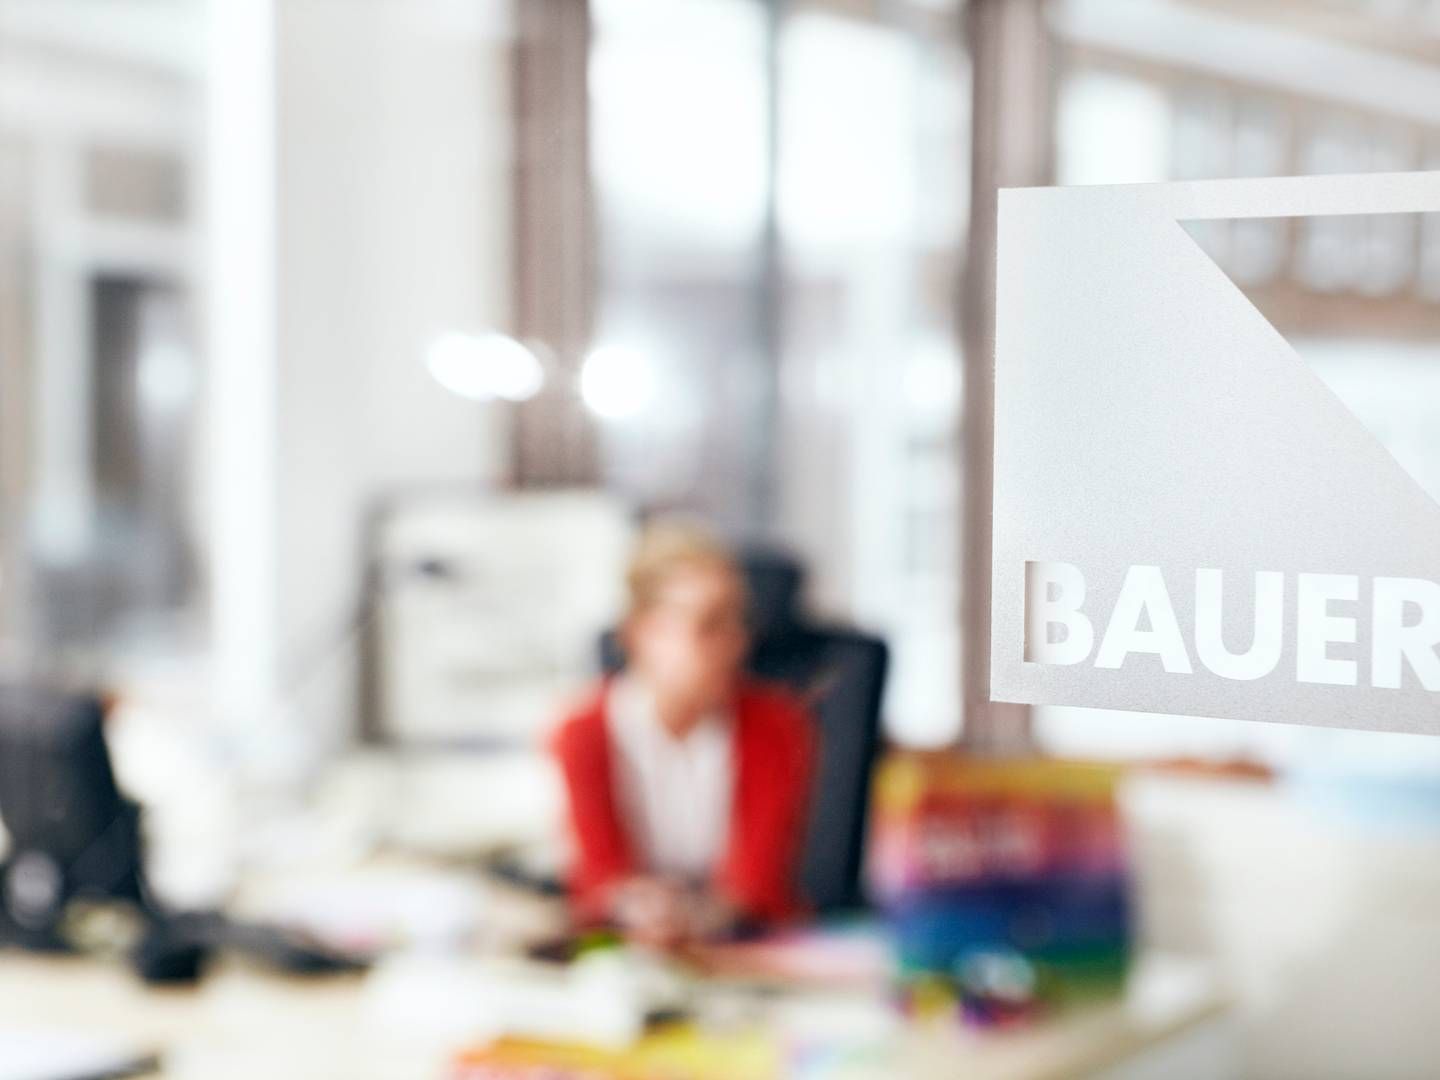 Bauer Media i Sverige, der står bag en række radiostationer, venter at hæve prisen på radiospots næste år. Det samme gør flere andre svenske medier. | Foto: Bauer Media